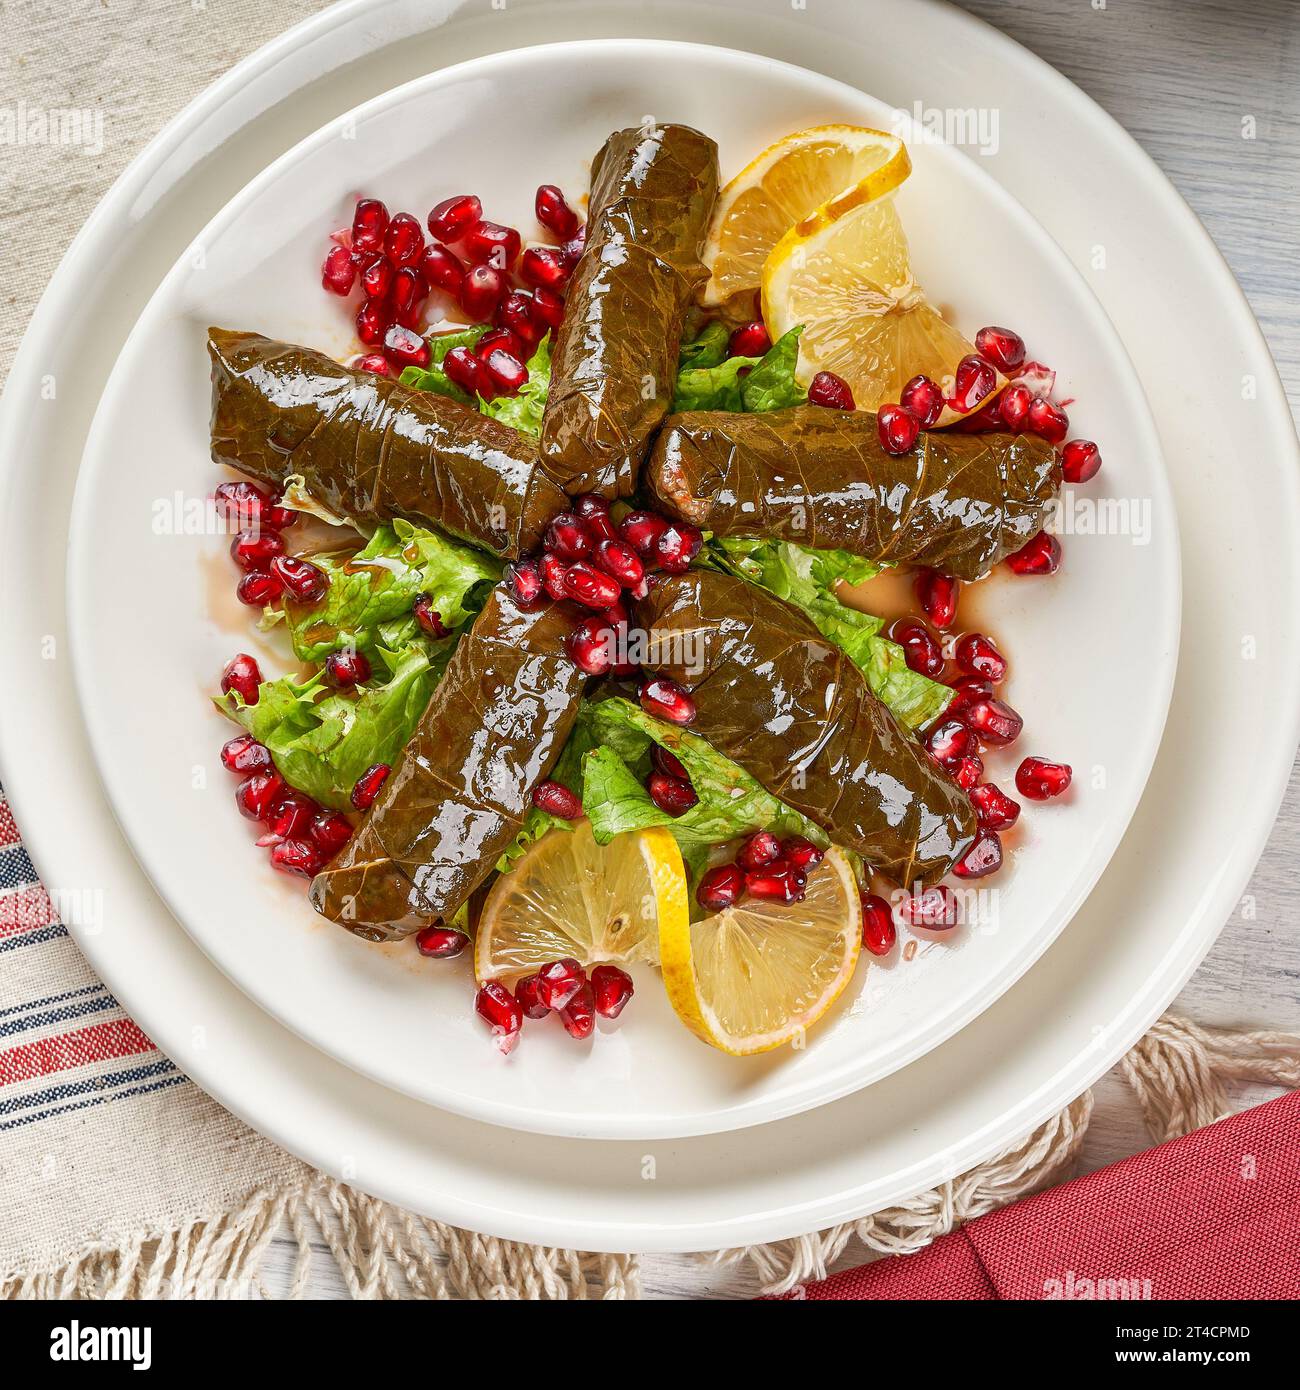 Rouleaux de feuilles de raisin farcis de riz et de viande, un plat d'apéritif turc-arabe populaire Banque D'Images